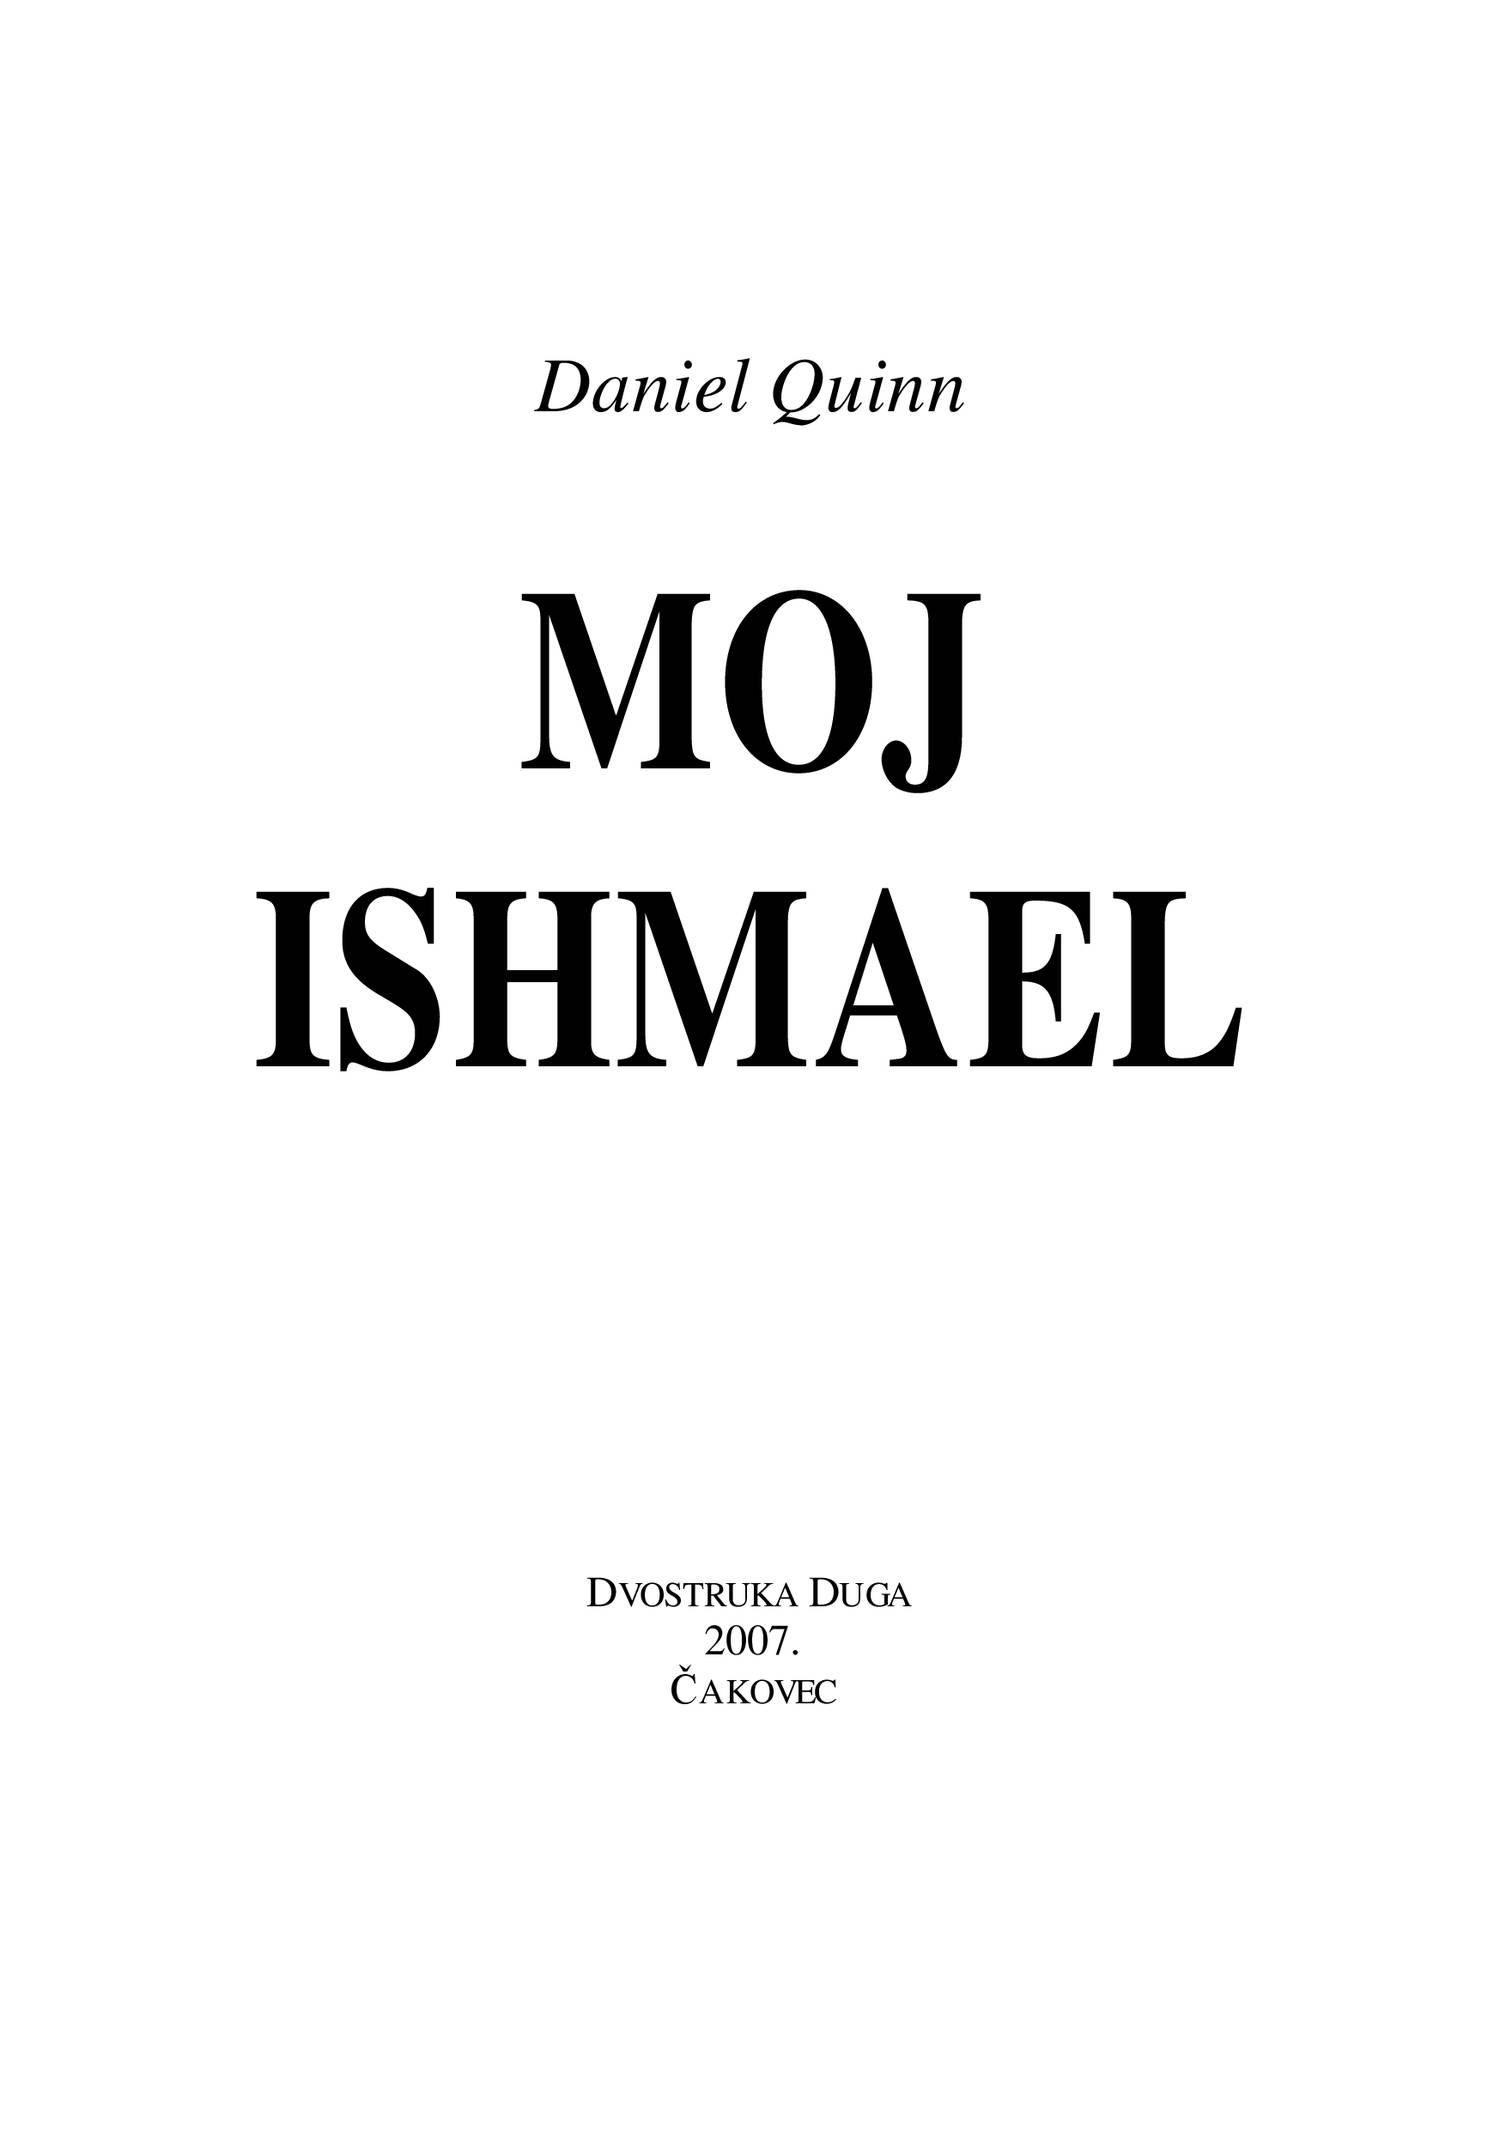 ishmael daniel quinn review